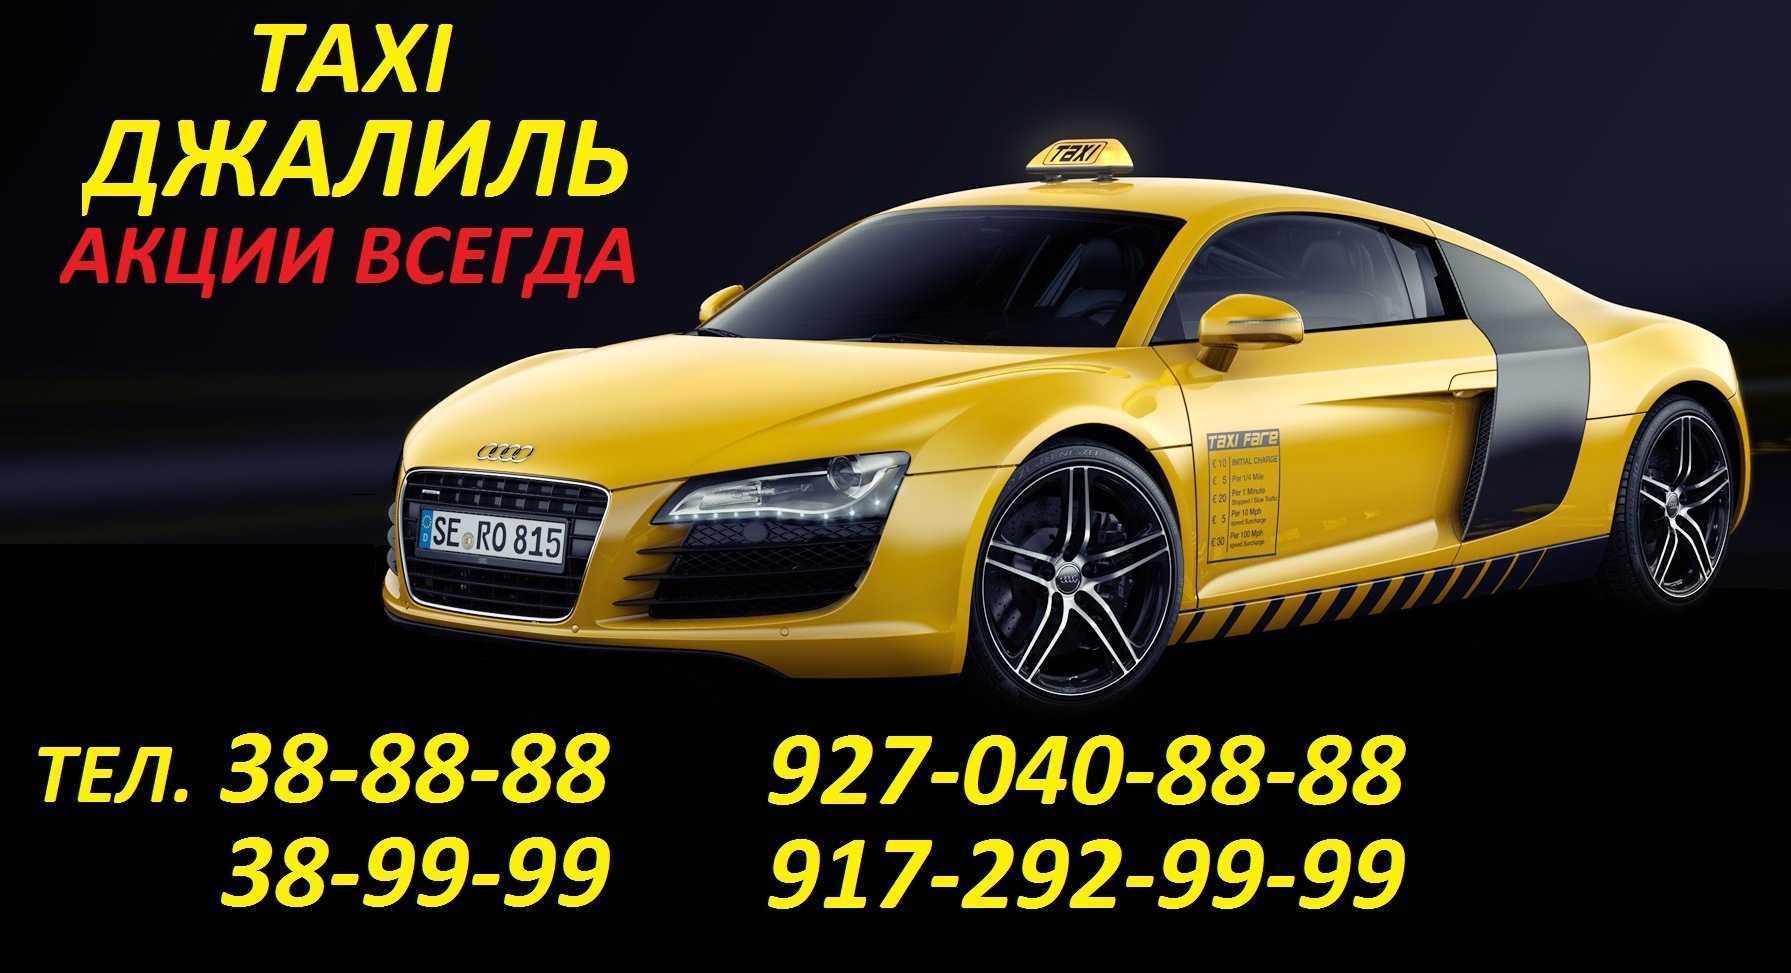 Такси Джалиль. Такси Джалиль номера. Номера такси в Джалиле. Такси в Джалиле.